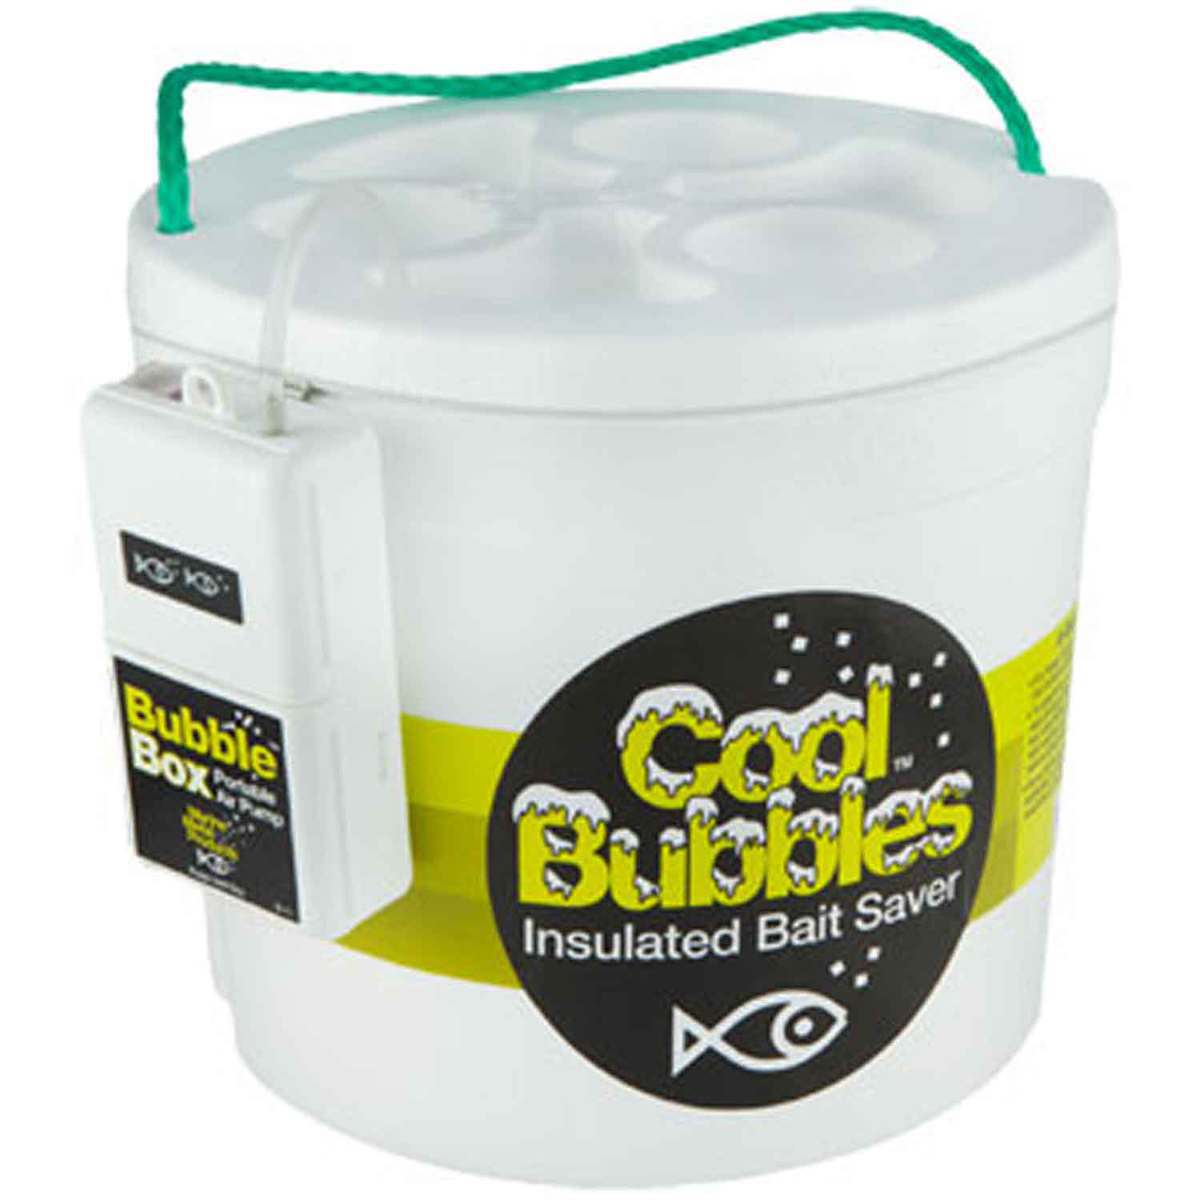 https://www.sportsmans.com/medias/marine-metal-cool-bubbles-insulated-bait-container-whandle-1491966-1.jpg?context=bWFzdGVyfGltYWdlc3w2NDY2MXxpbWFnZS9qcGVnfGFXMWhaMlZ6TDJnNE1TOW9OV012T1RjeE9USTVNelEwTkRFeU5pNXFjR2N8MjM4NTZiMzUwMWFjNTFjZjU2NjNkMzYyNTZjNWE2ZWM4YmRmODQ0ZGVjNmY4MzUxMjk2MTA2MjBkODk3NTI0Nw